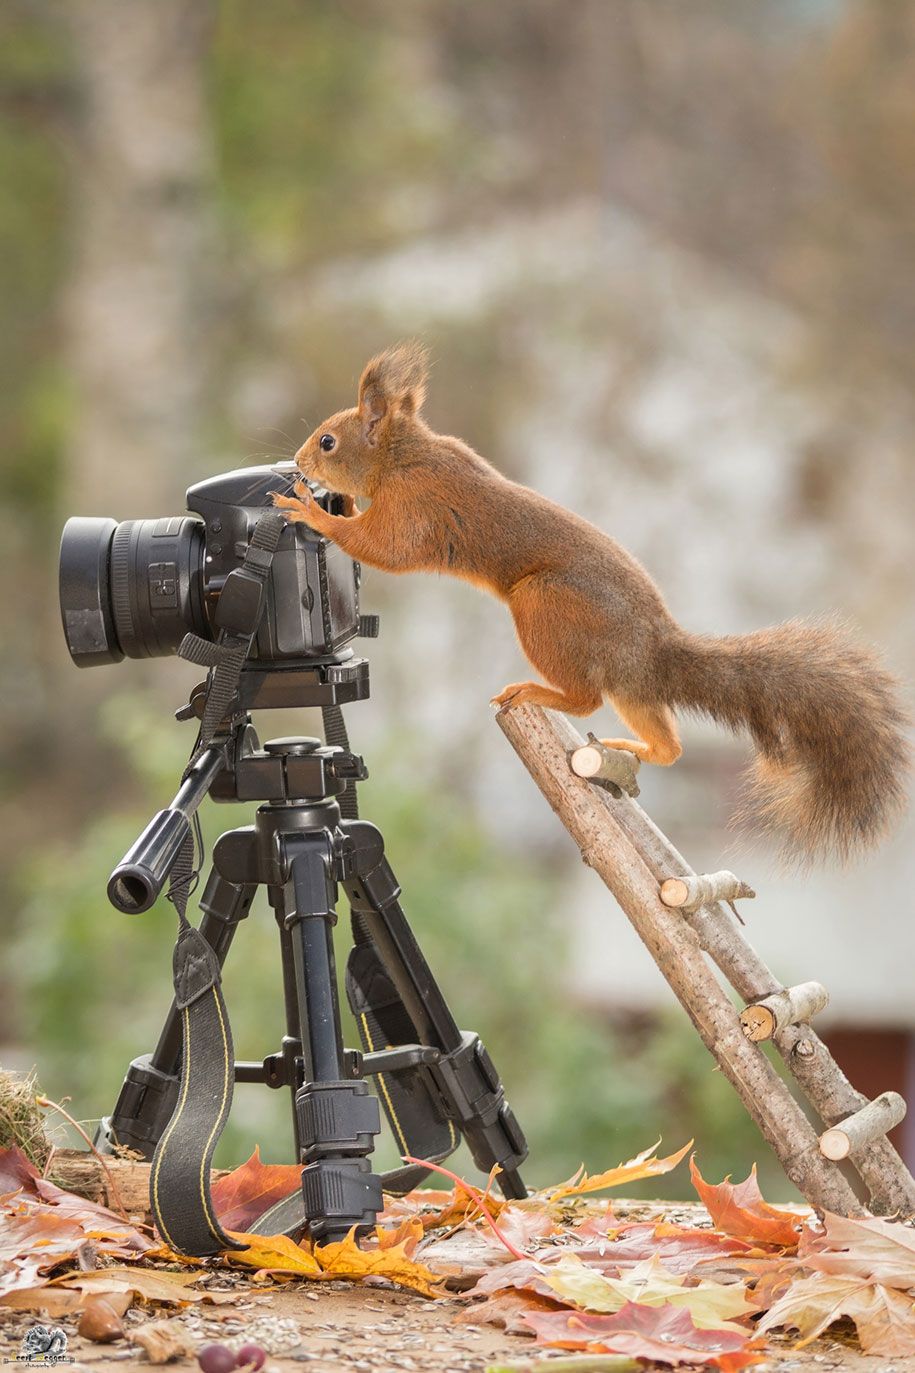 natuur-dier-fotografie-achtertuin-eekhoorns-geert-weggen-18